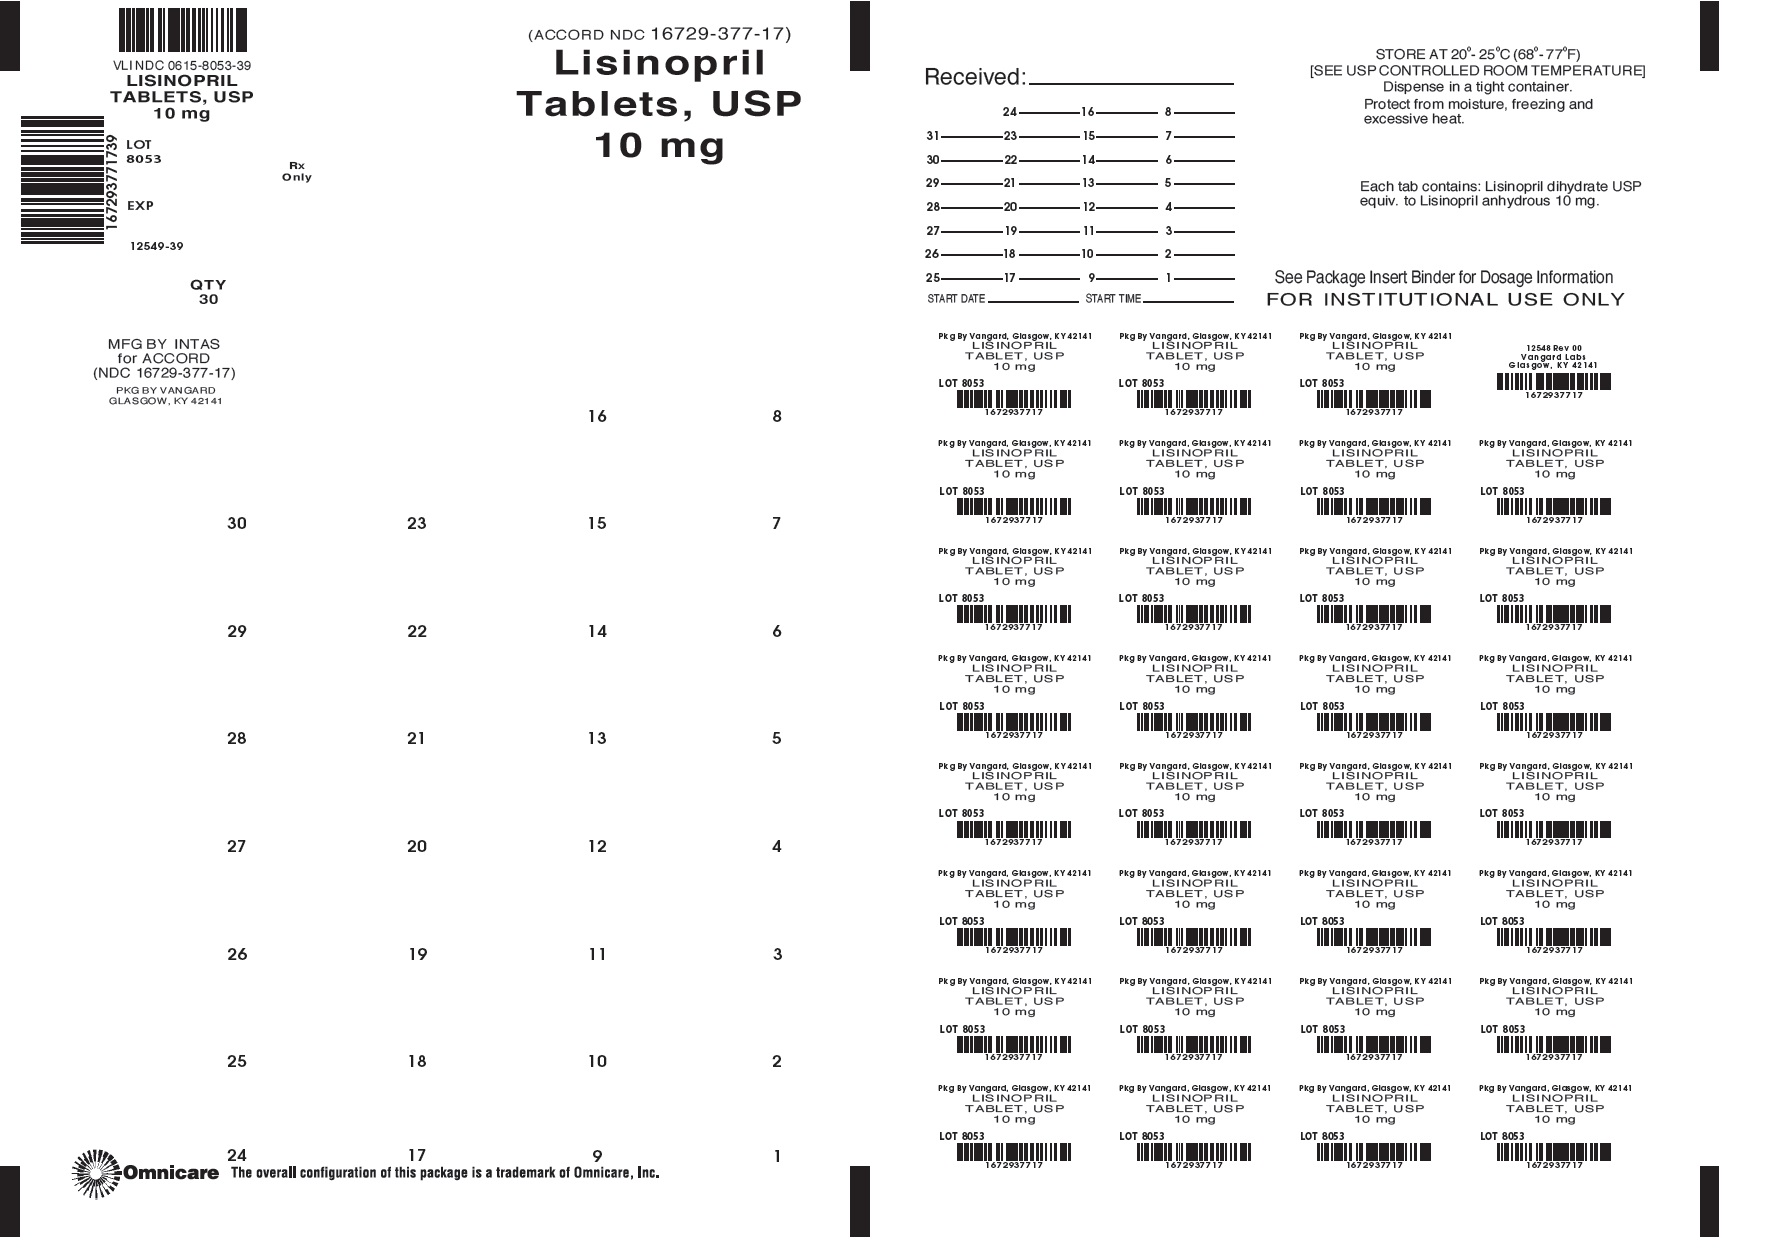 Lisinopril 10mg bingo card label